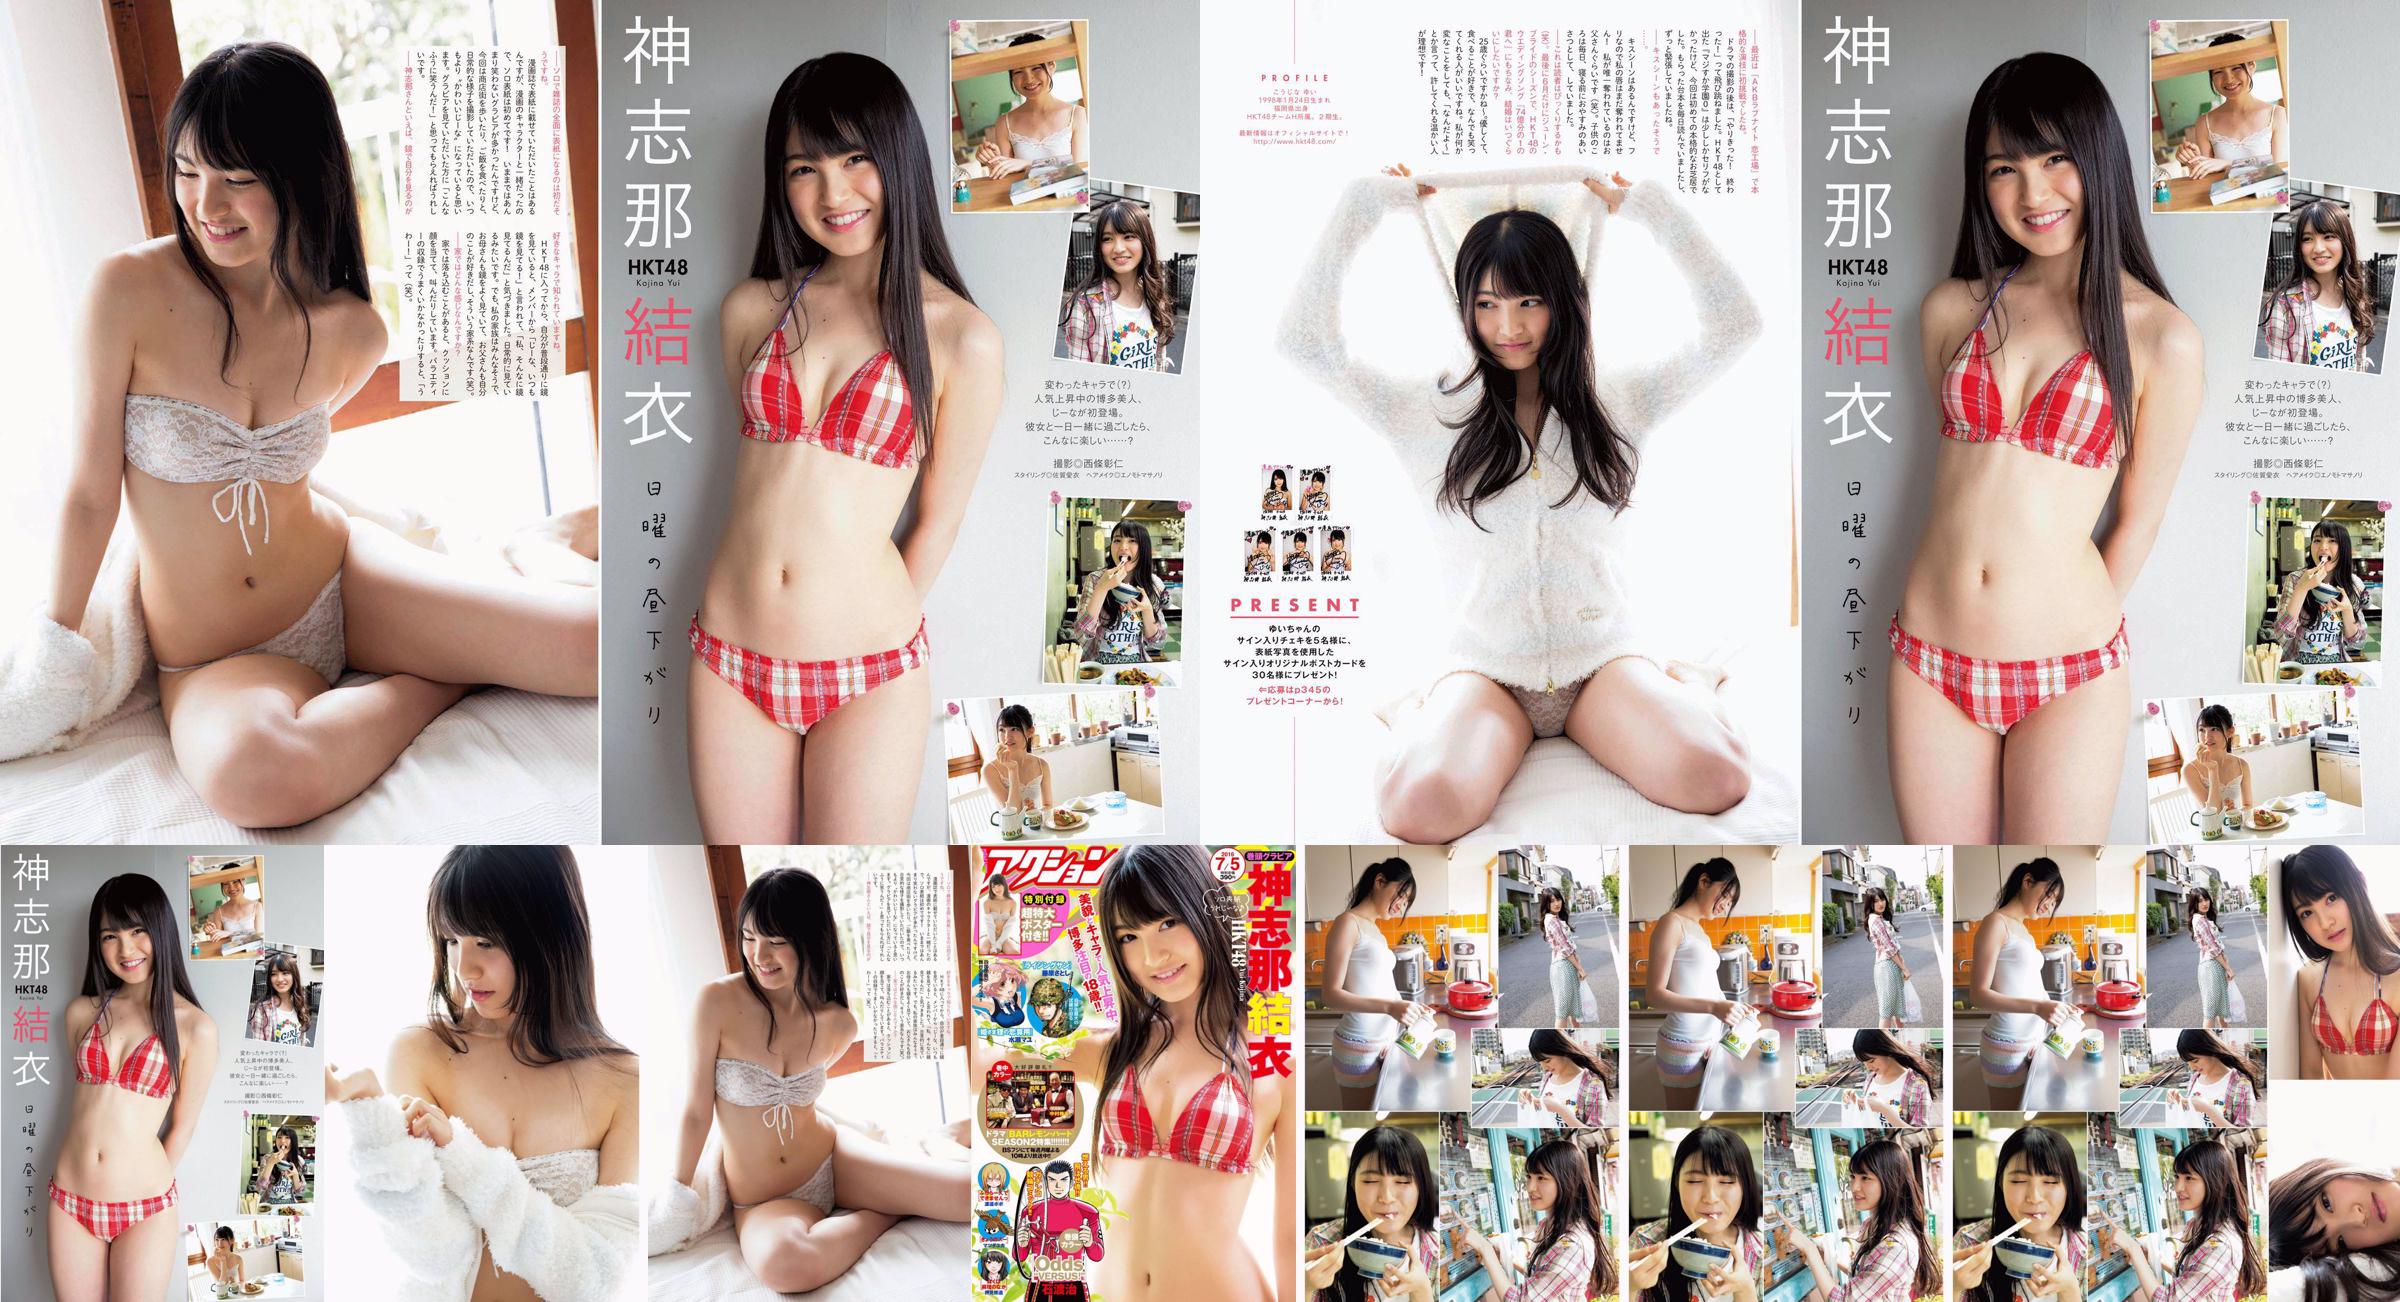 [Manga Action] Shinshina Yui 2016 No.13 Photo Magazine No.7fb2cf Pagina 1